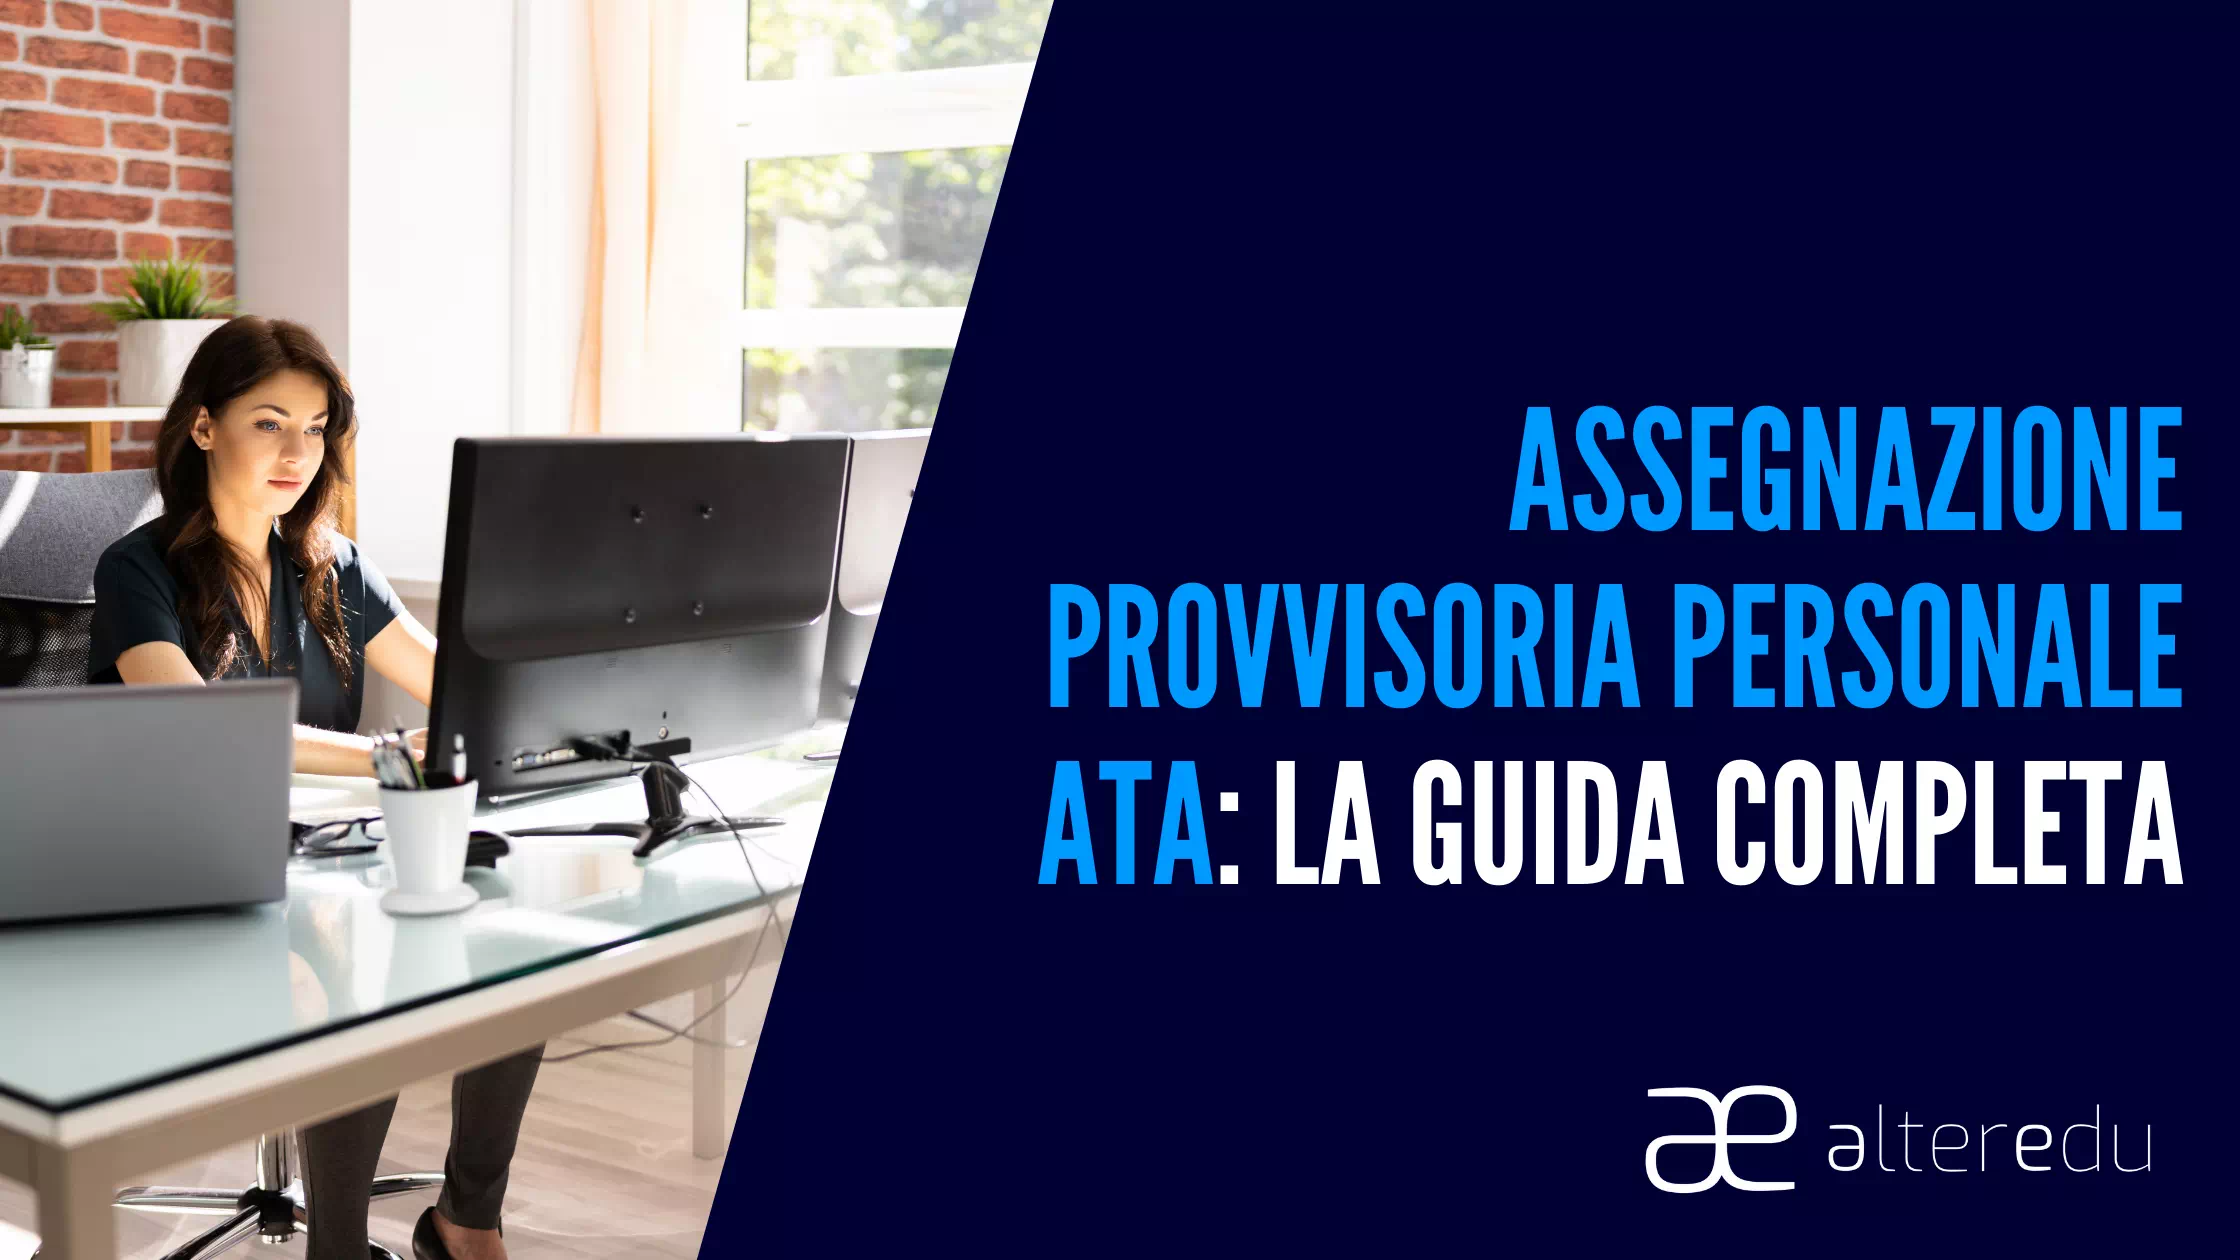  Assegnazione Provvisoria Personale ATA: la Guida Completa